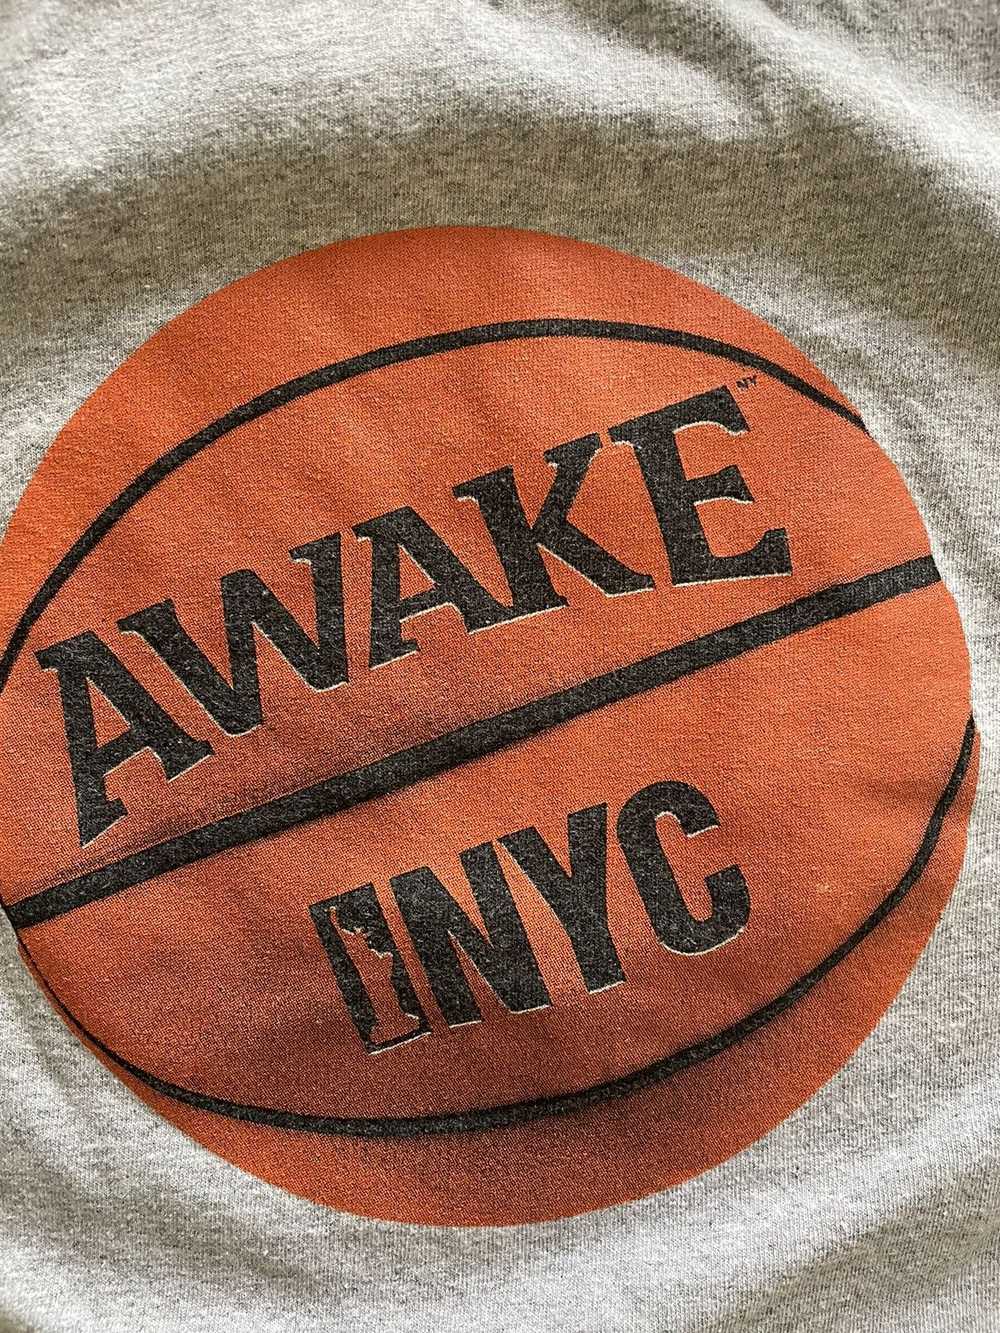 Awake Awake NYC Basketball Tee - image 2